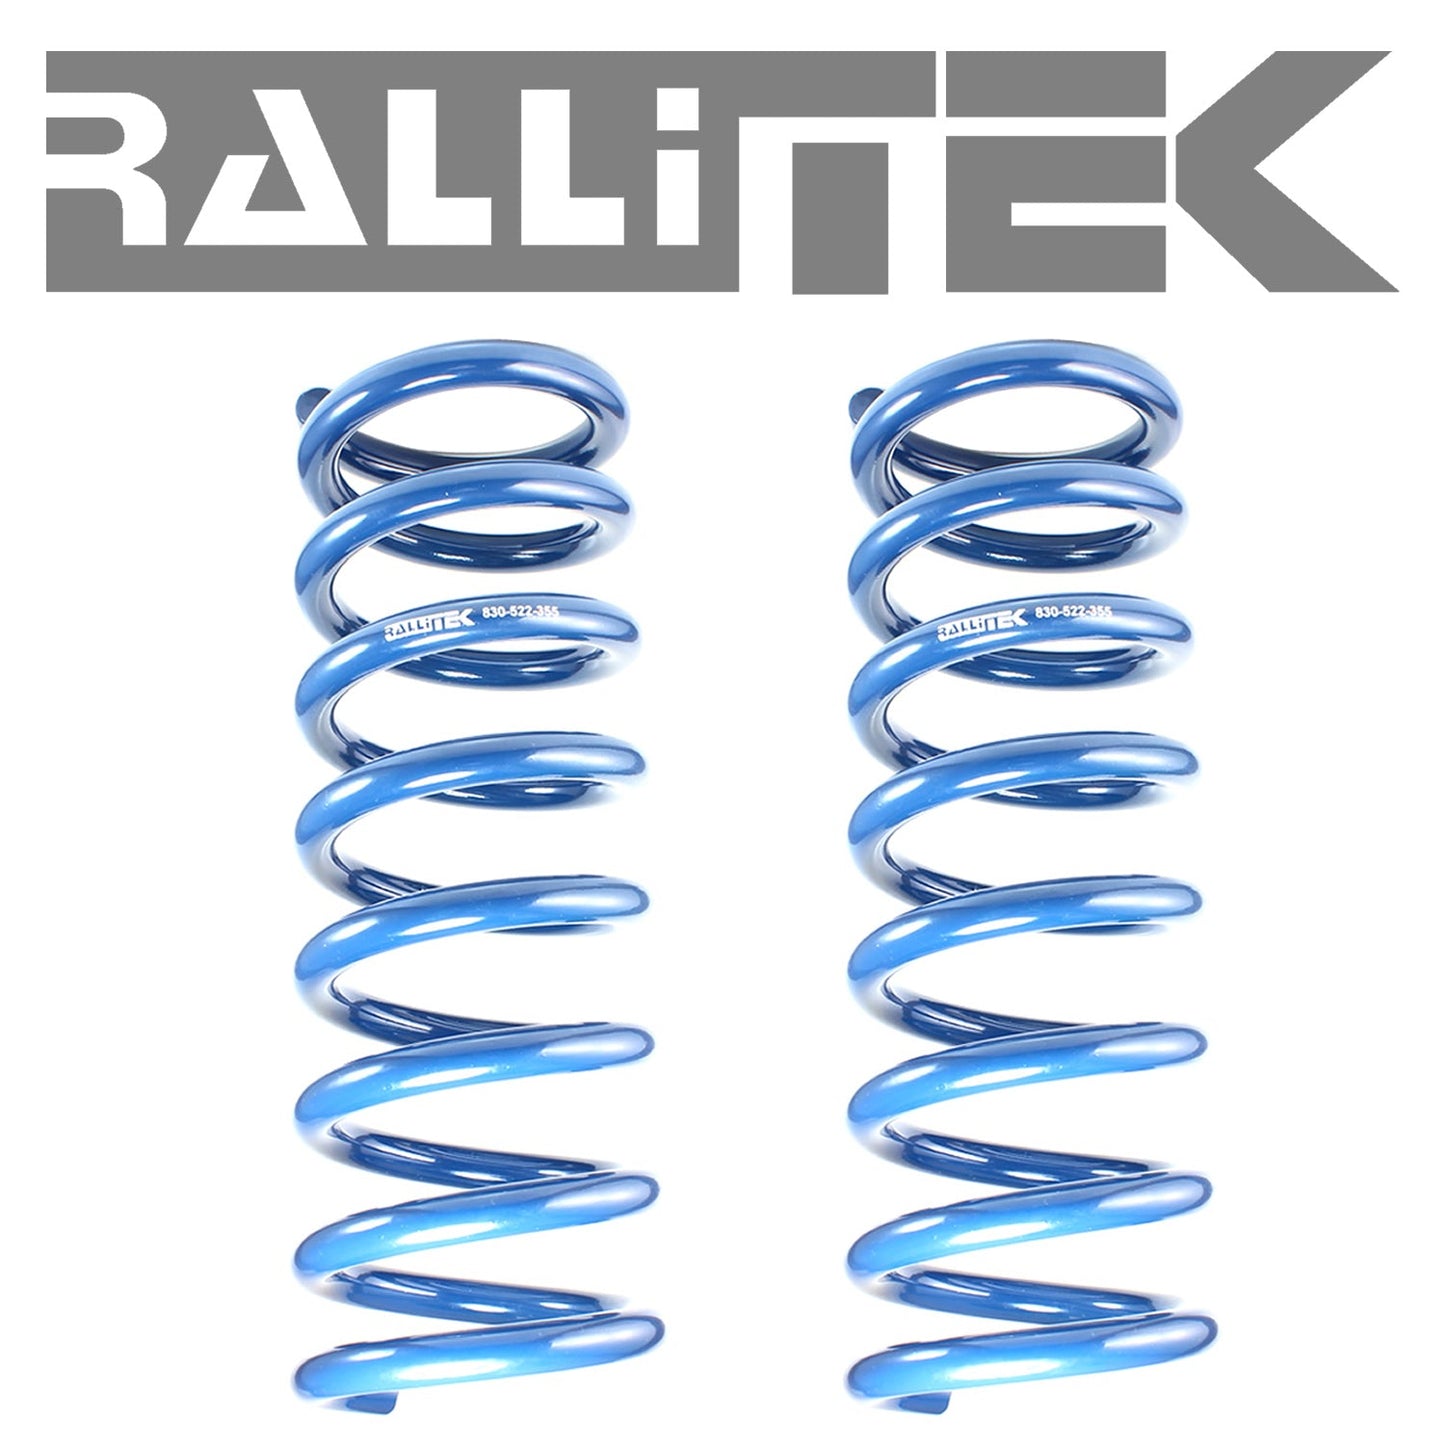 RalliTEK 0.25" Rear Overload Springs & KYB Excel-G Struts Assembled - Crosstrek XV 2013-2017